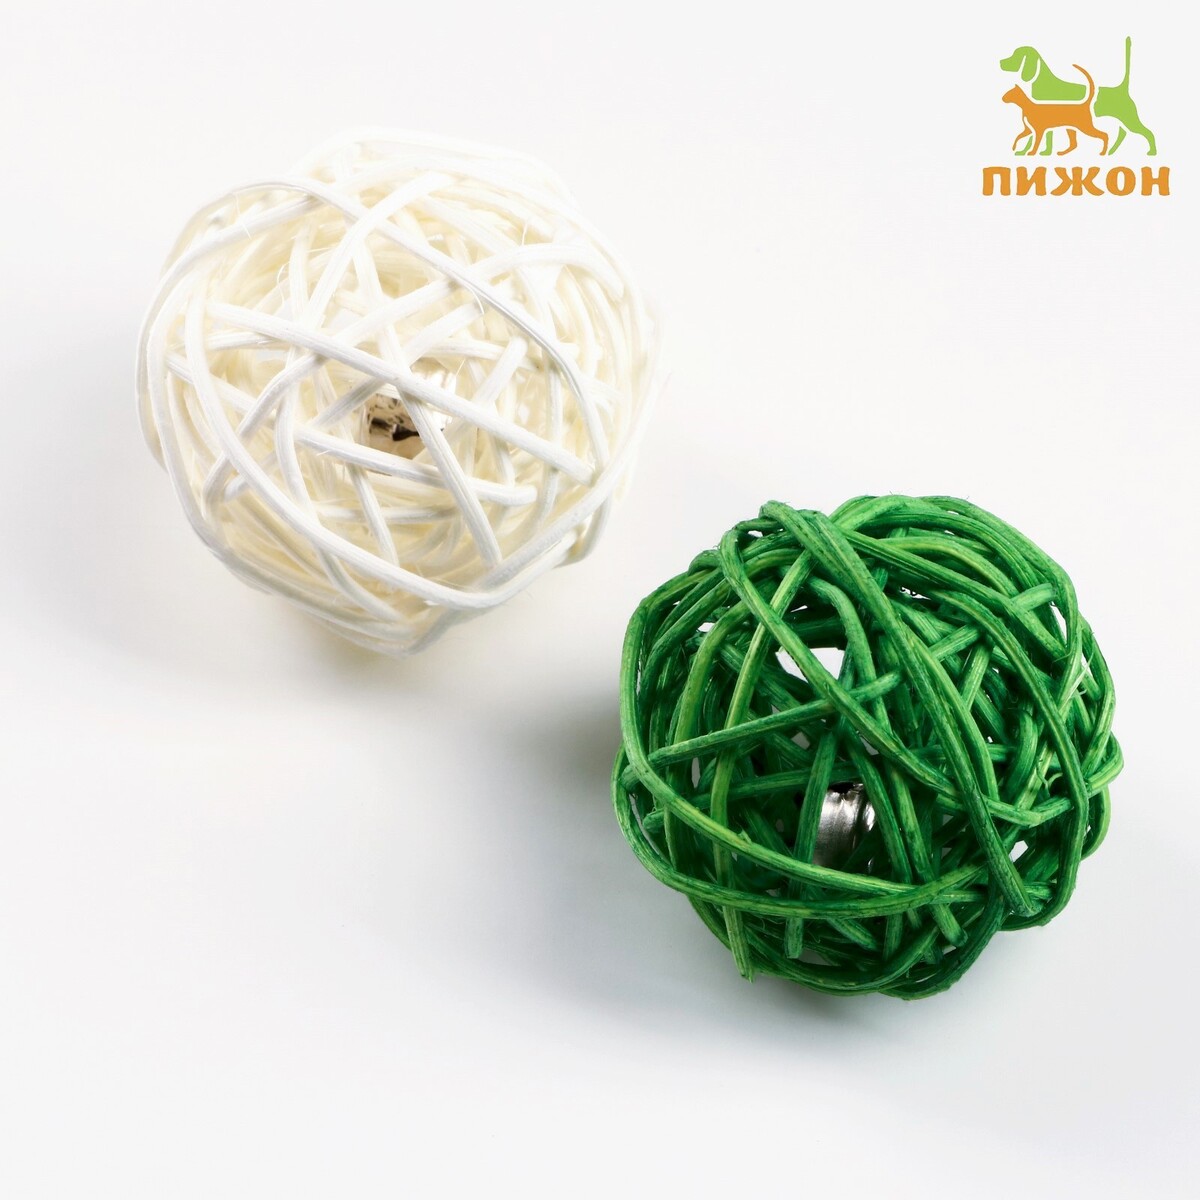 Набор из 2 плетеных шариков из лозы с бубенчиком, 5 см, белый/зеленый набор плетеных корзин для хранения ручной работы ladо́m